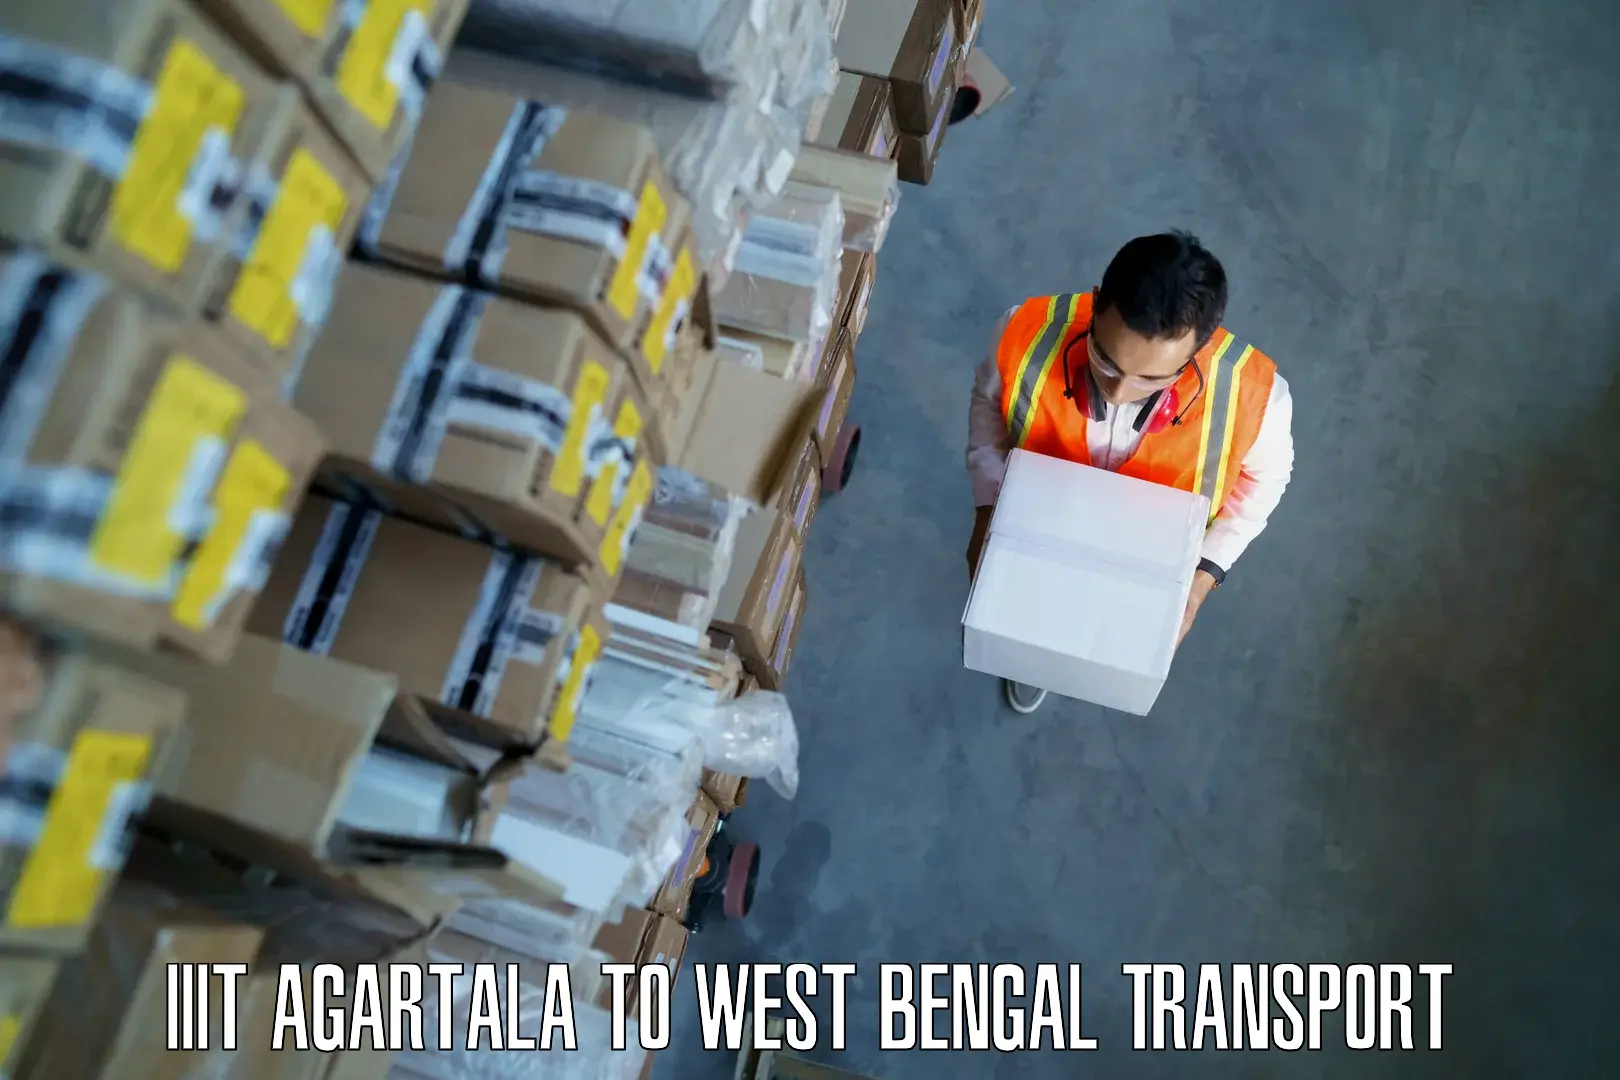 Container transport service IIIT Agartala to Pundibari